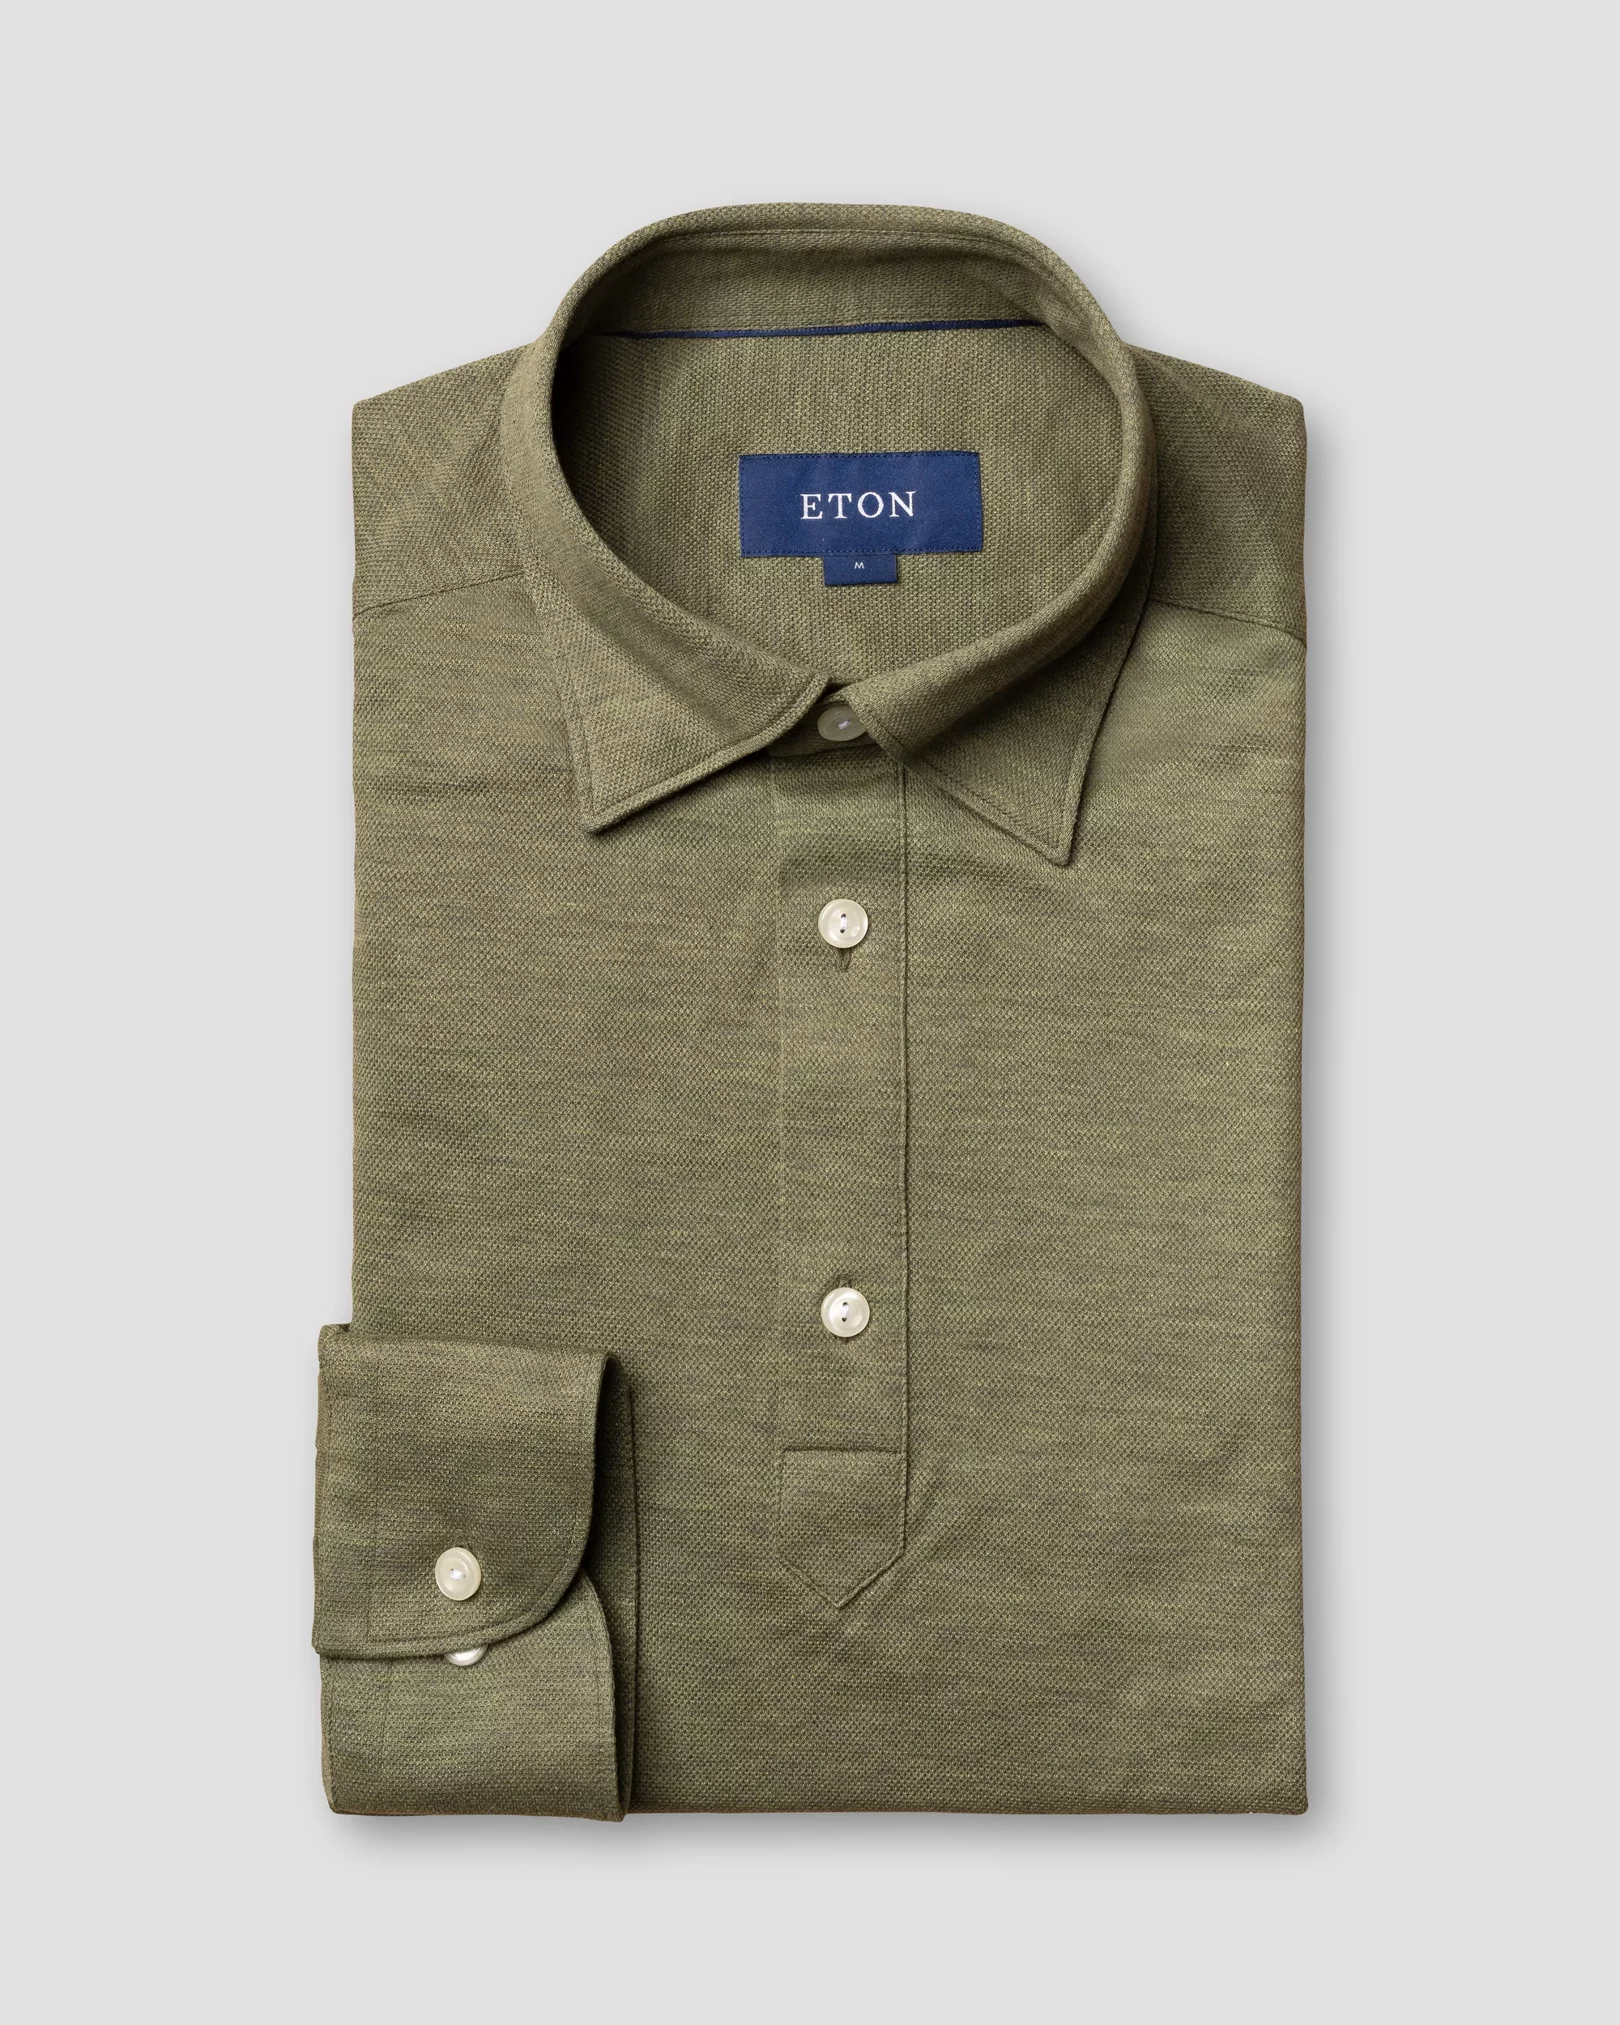 Eton - olive polo shirt long sleeved